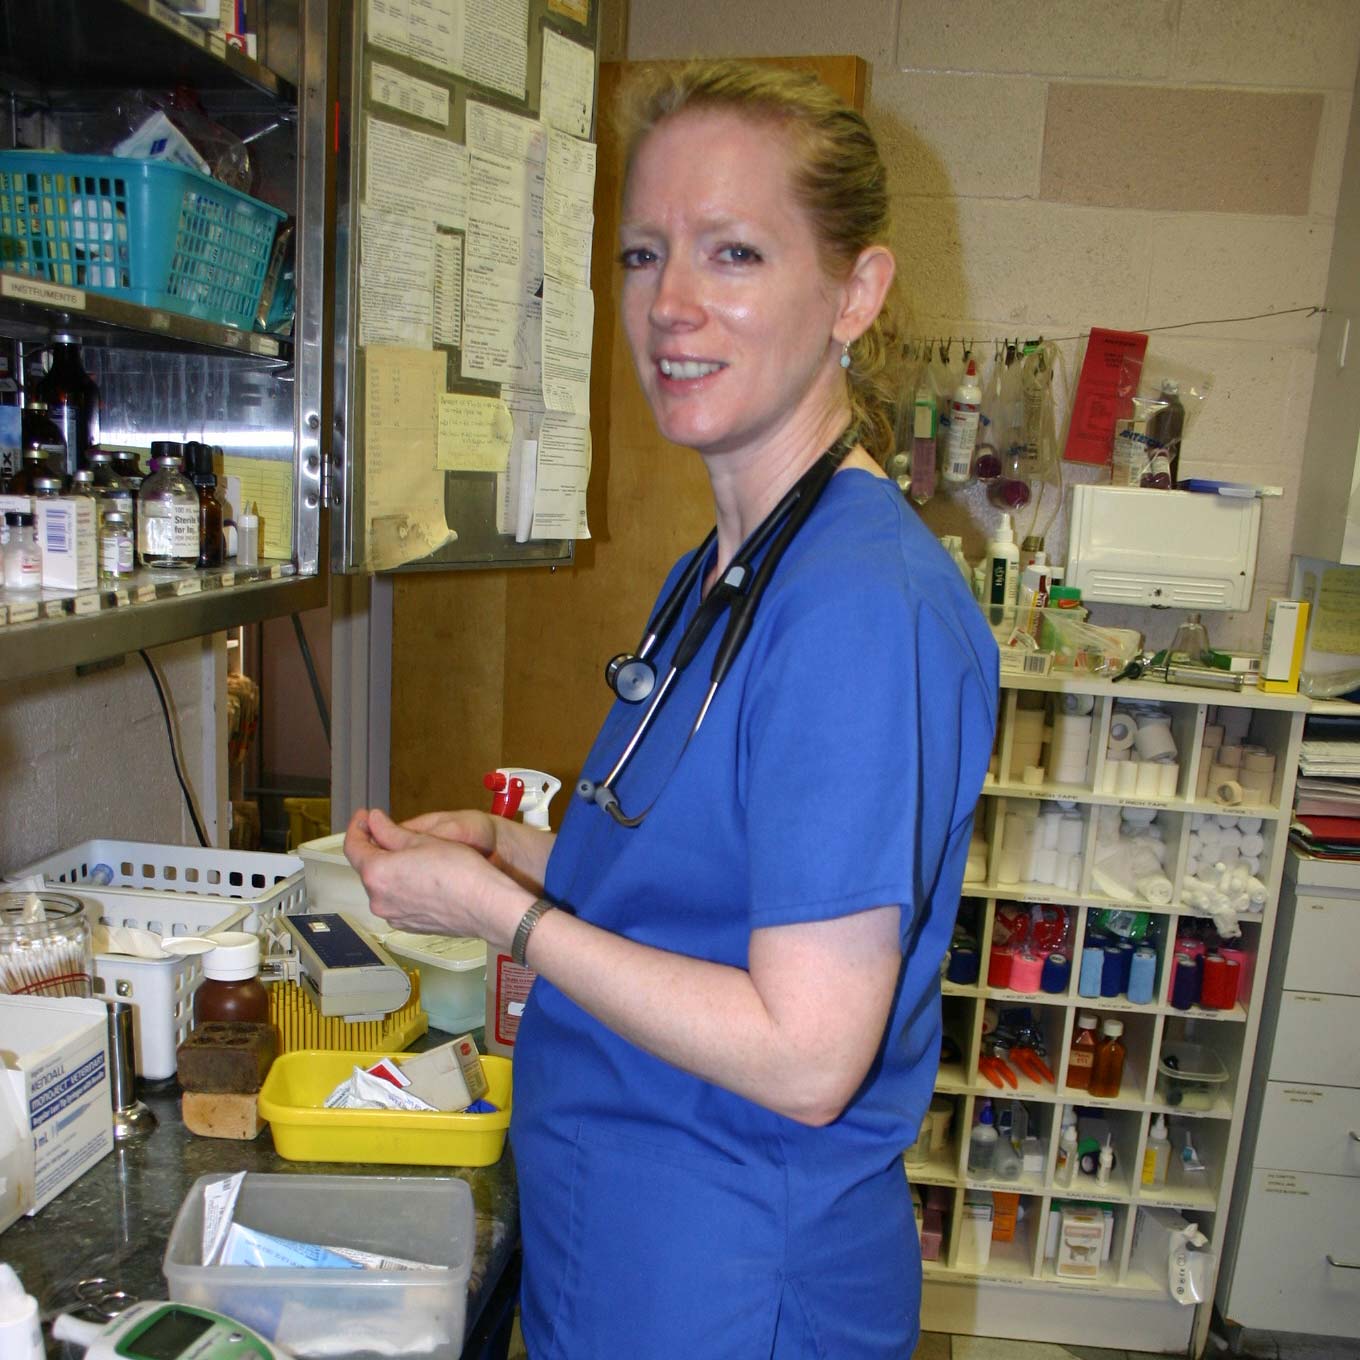 a vet in a blue scrubs